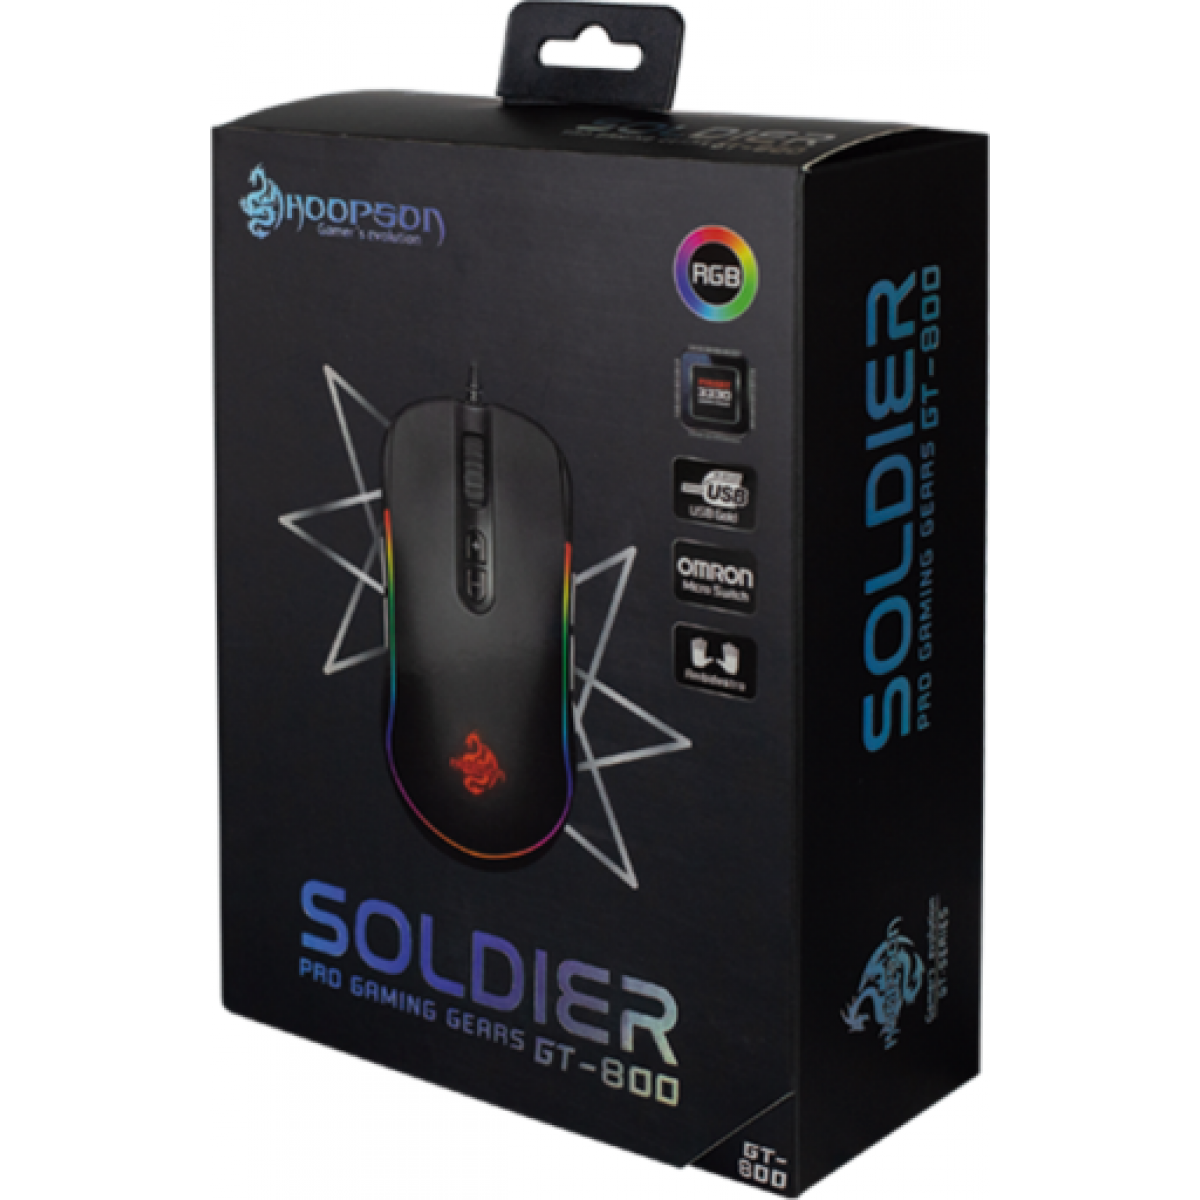 Mouse Gamer Hoopson Soldier RGB, 7200 DPI, 10 Botões, Black, GT800